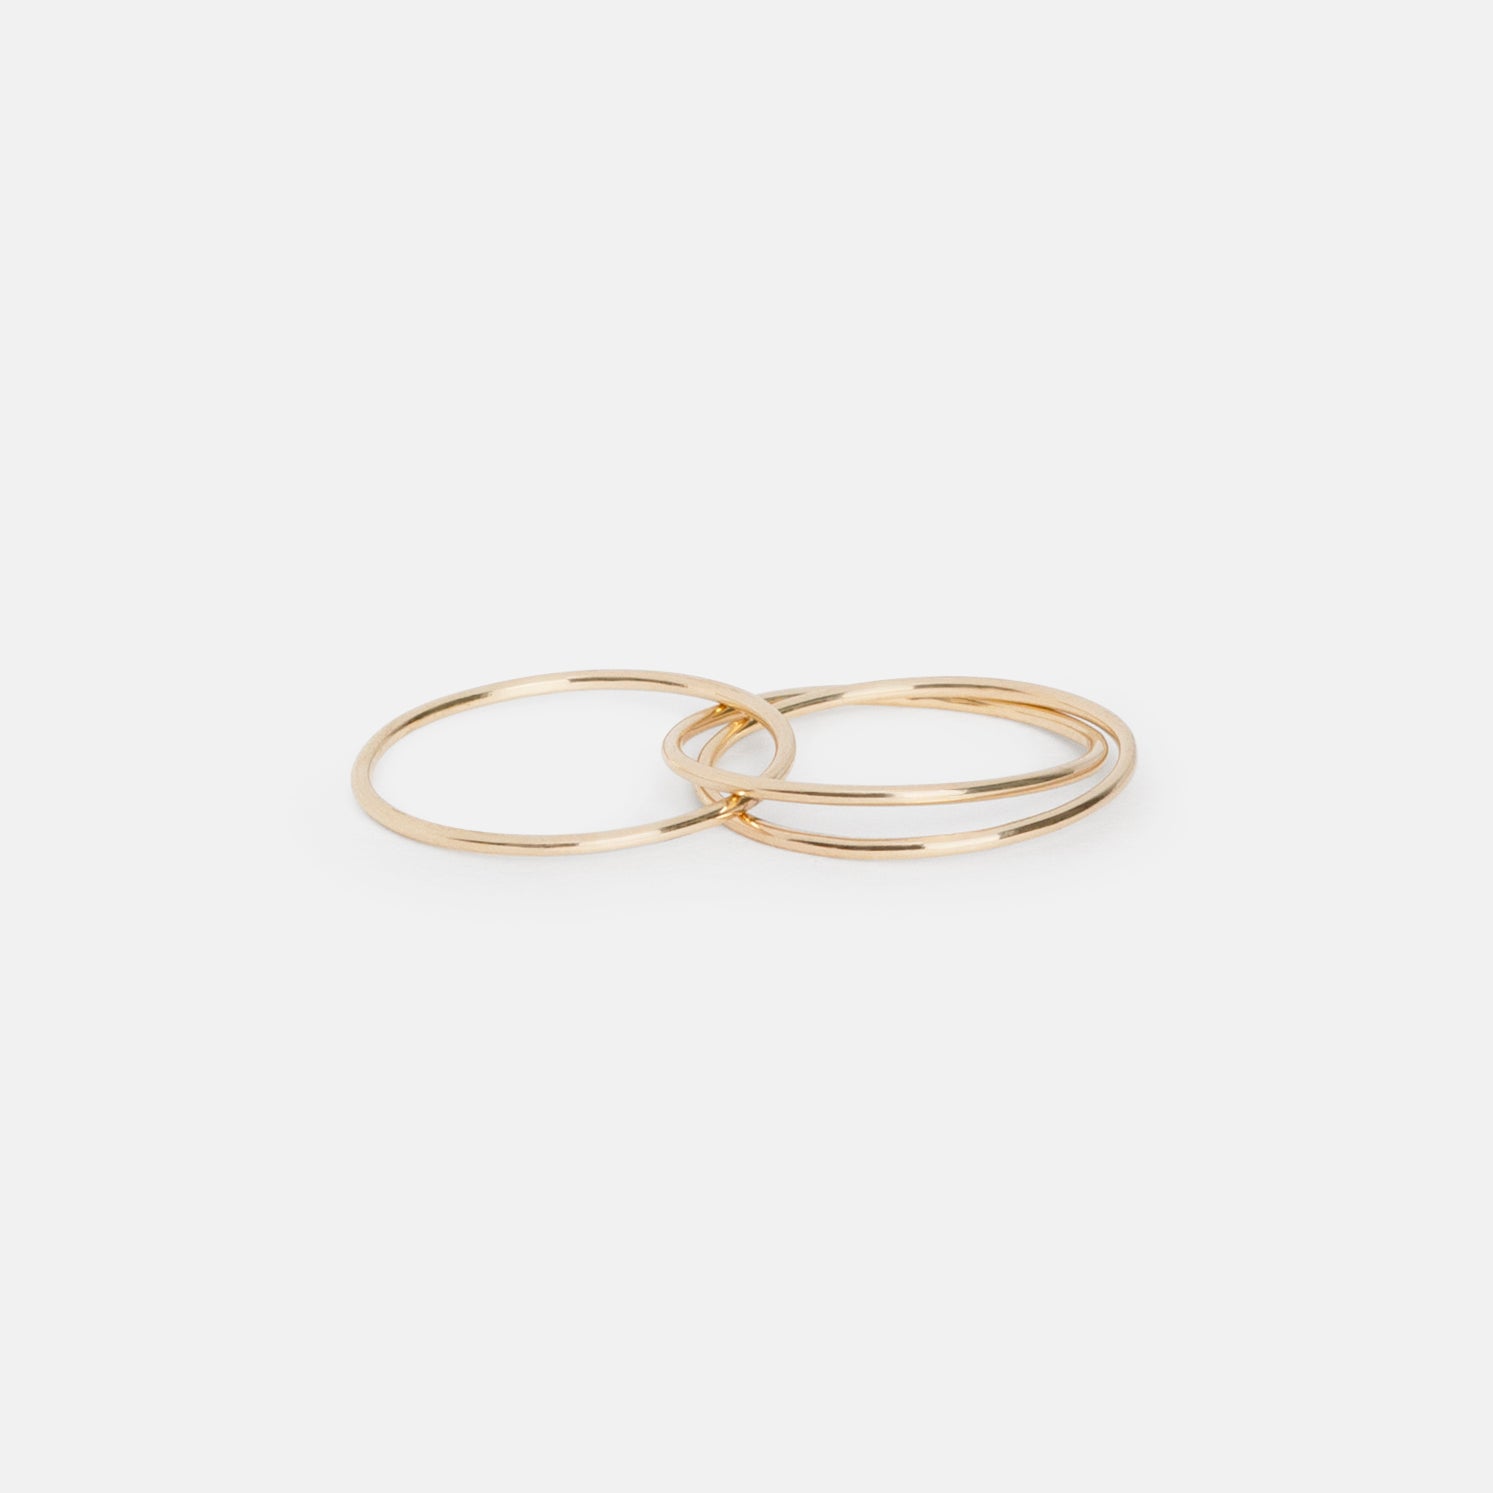 Link Minimalist Ring in 14k Gold by SHW Fine Jewelry